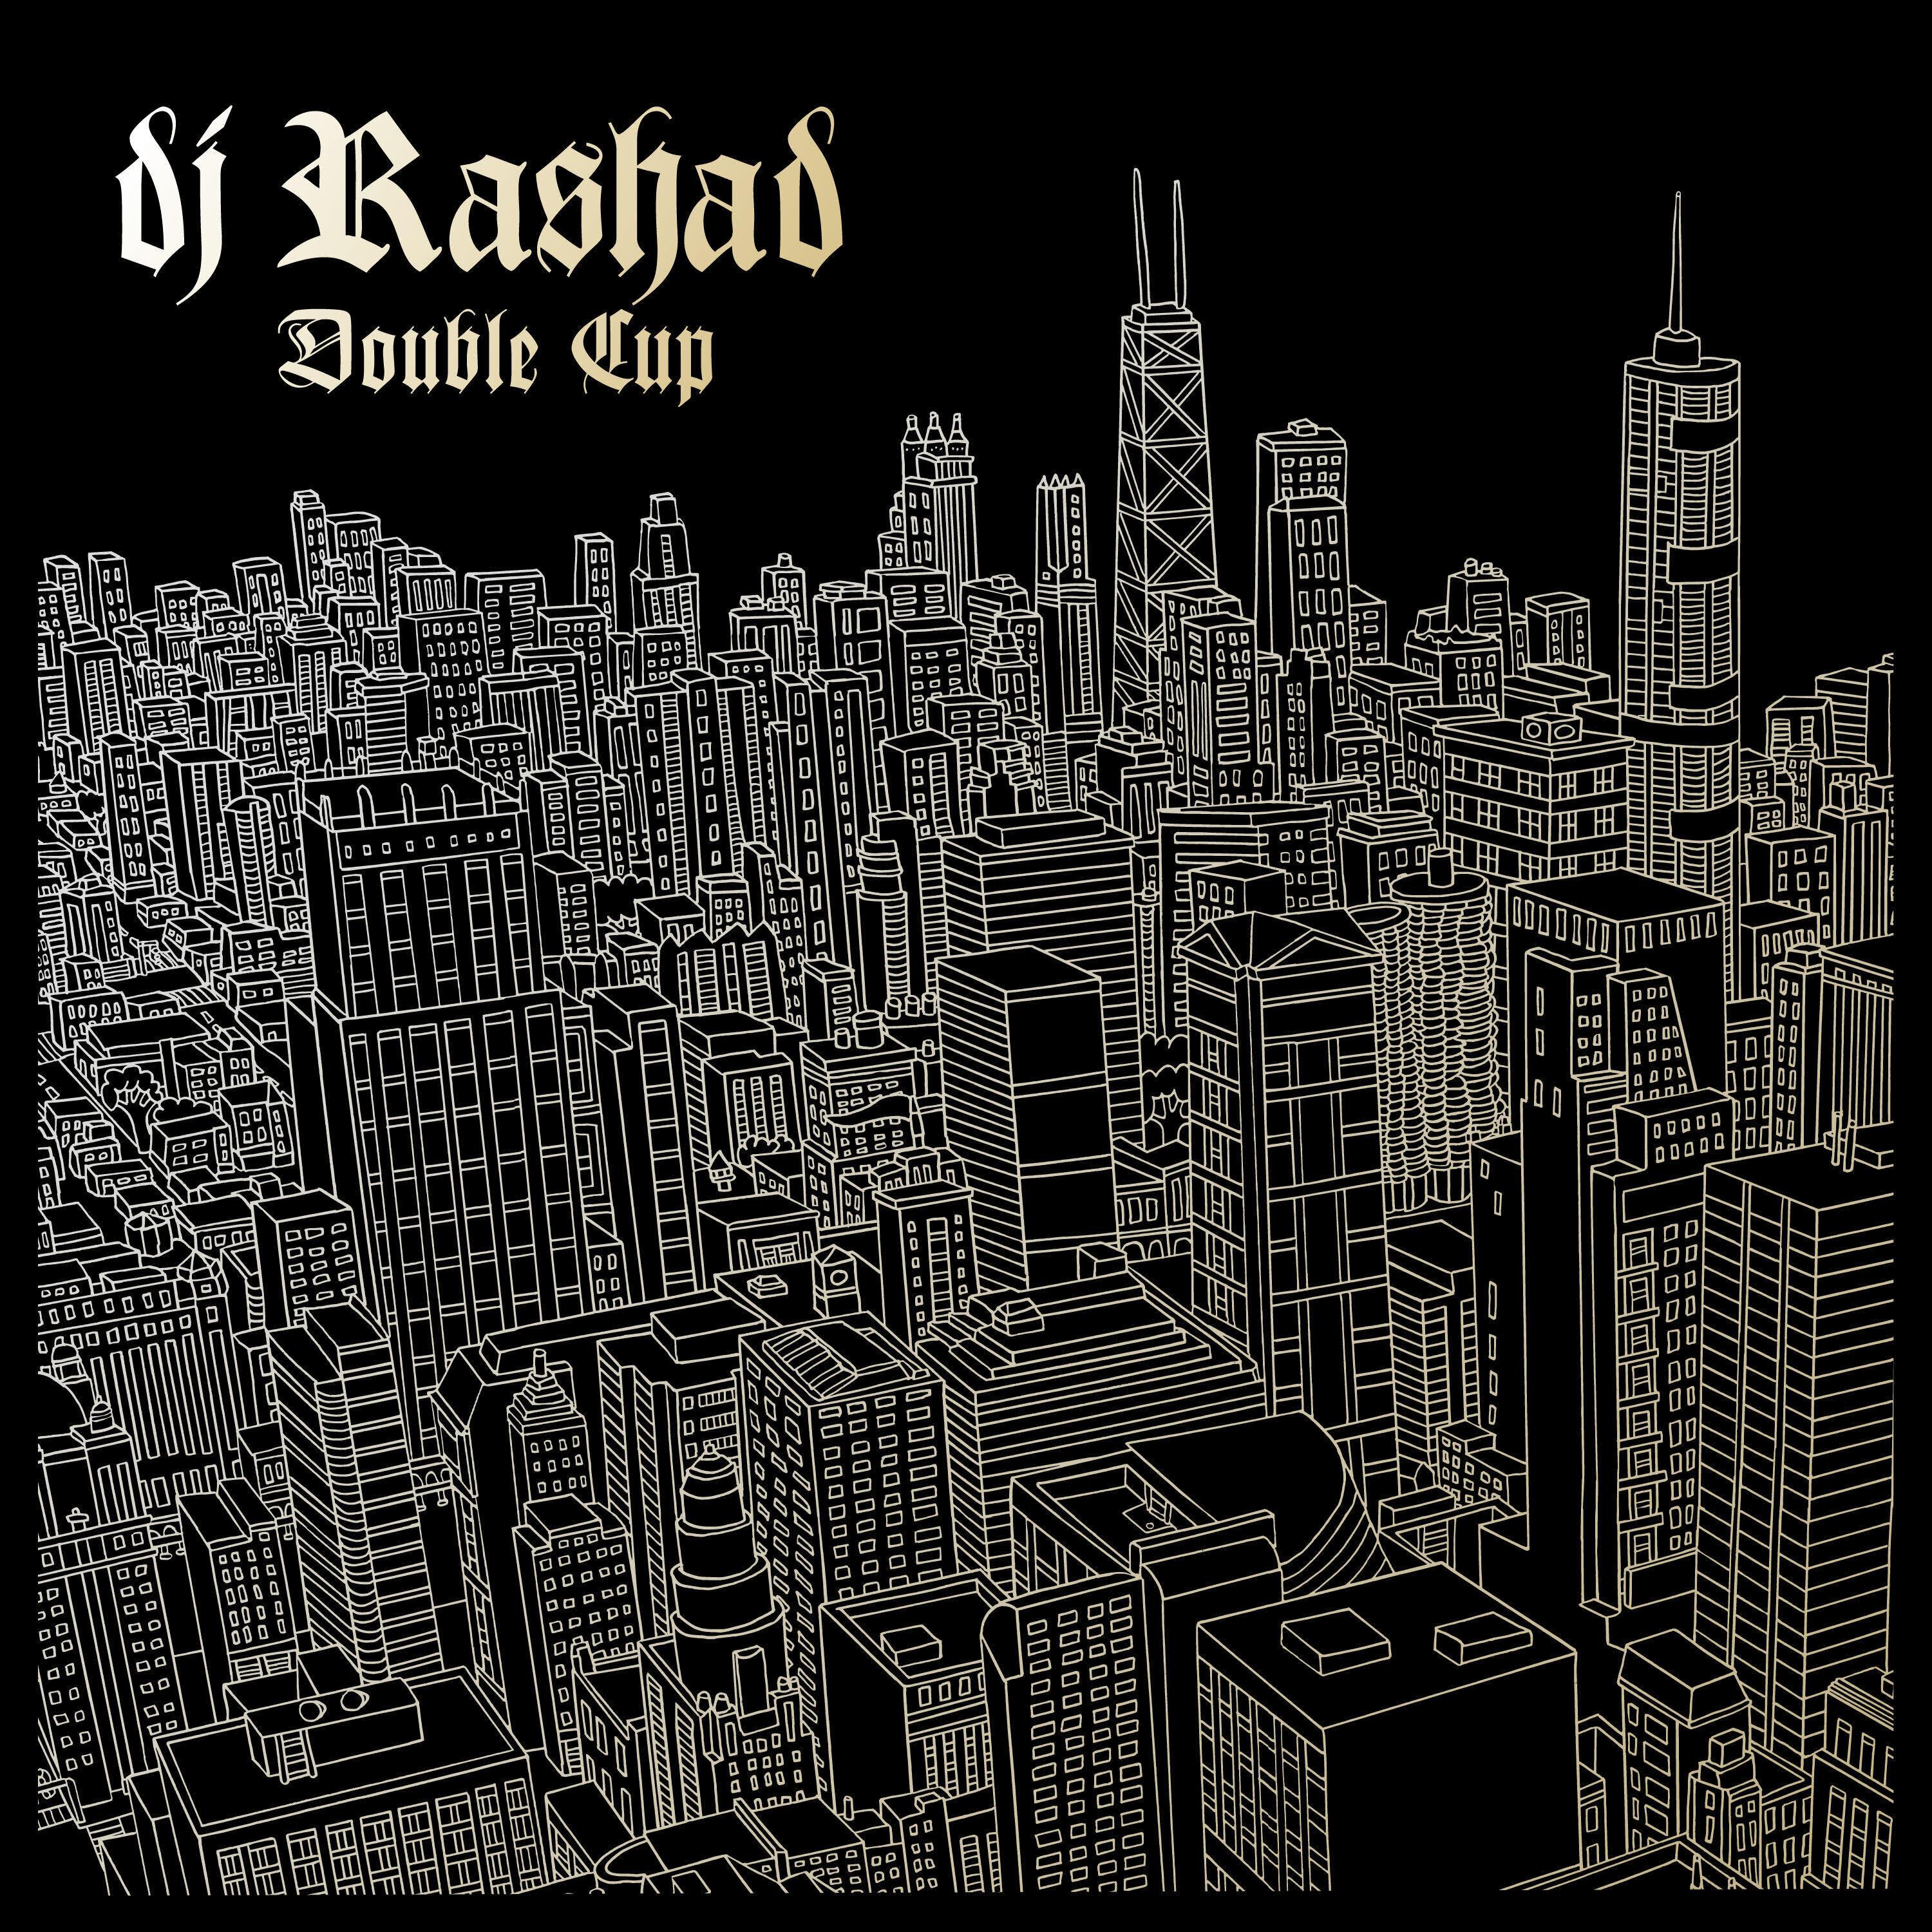 DJ Rashad - Only One (feat. DJ Spinn & Taso)